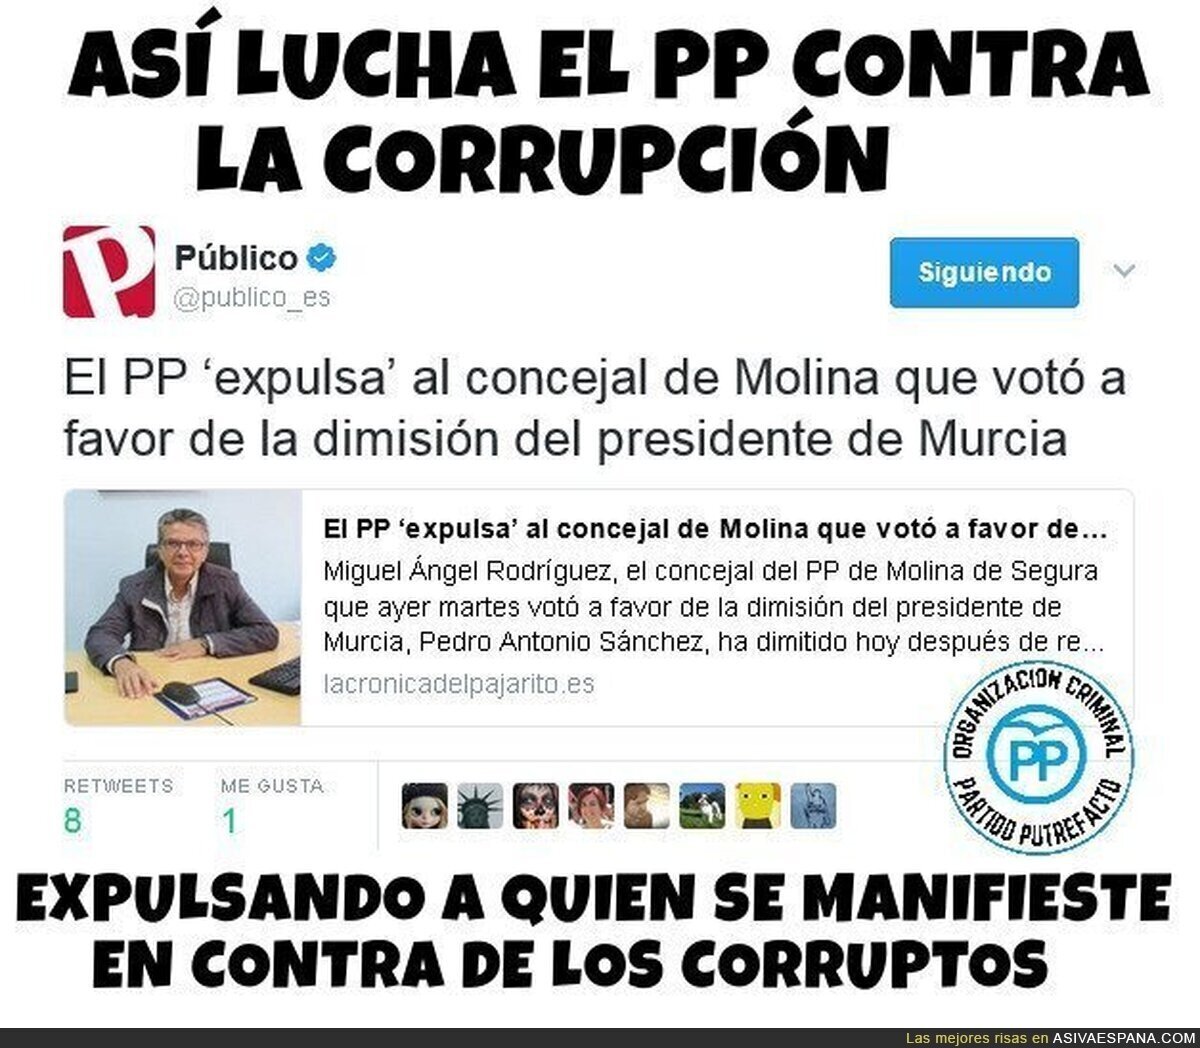 La incansable lucha del PP contra la corrupción